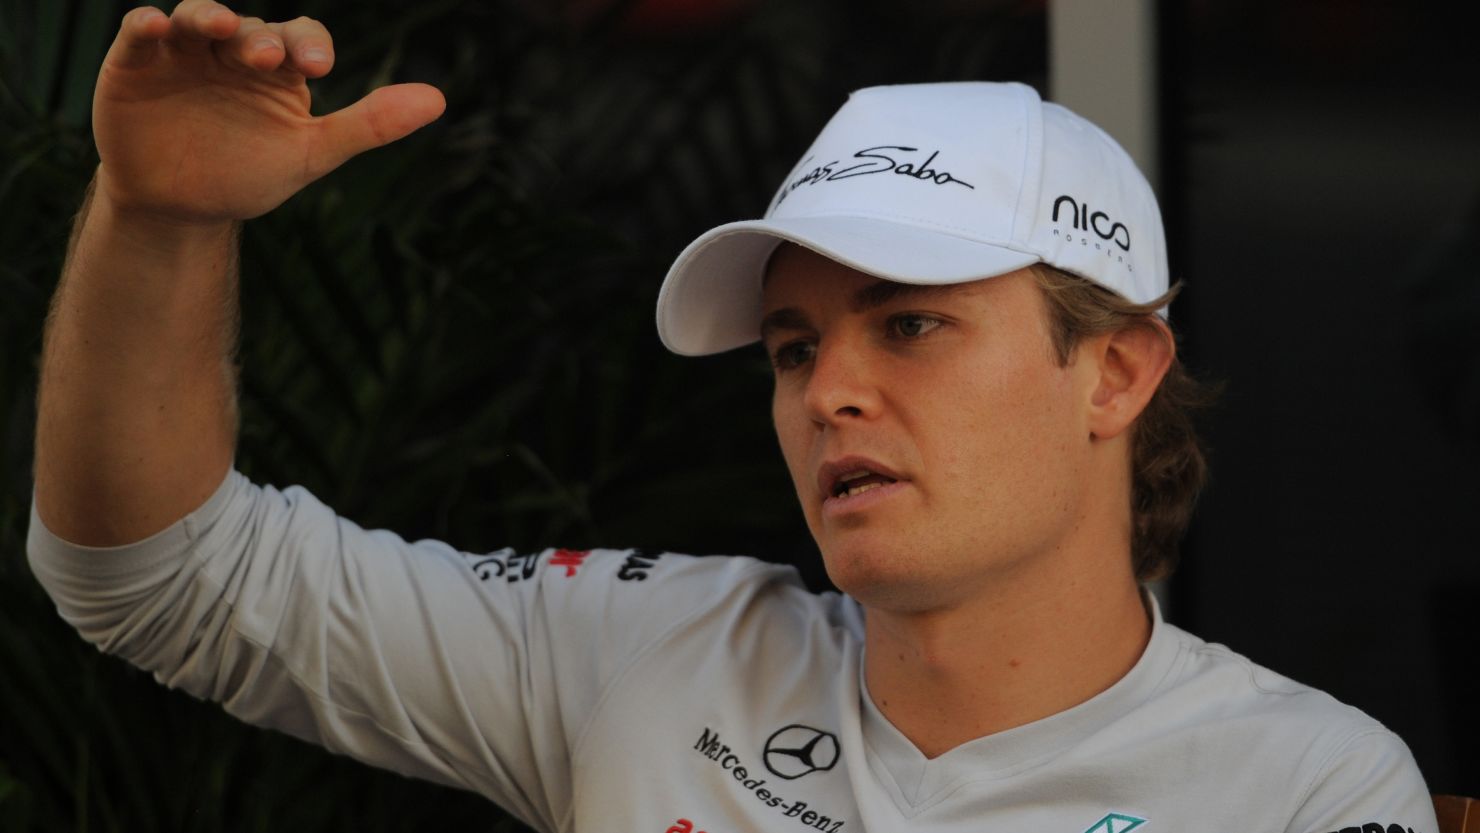 German driver Nico Rosberg made his Formula One debut at the 2006 Bahrain Grand Prix.